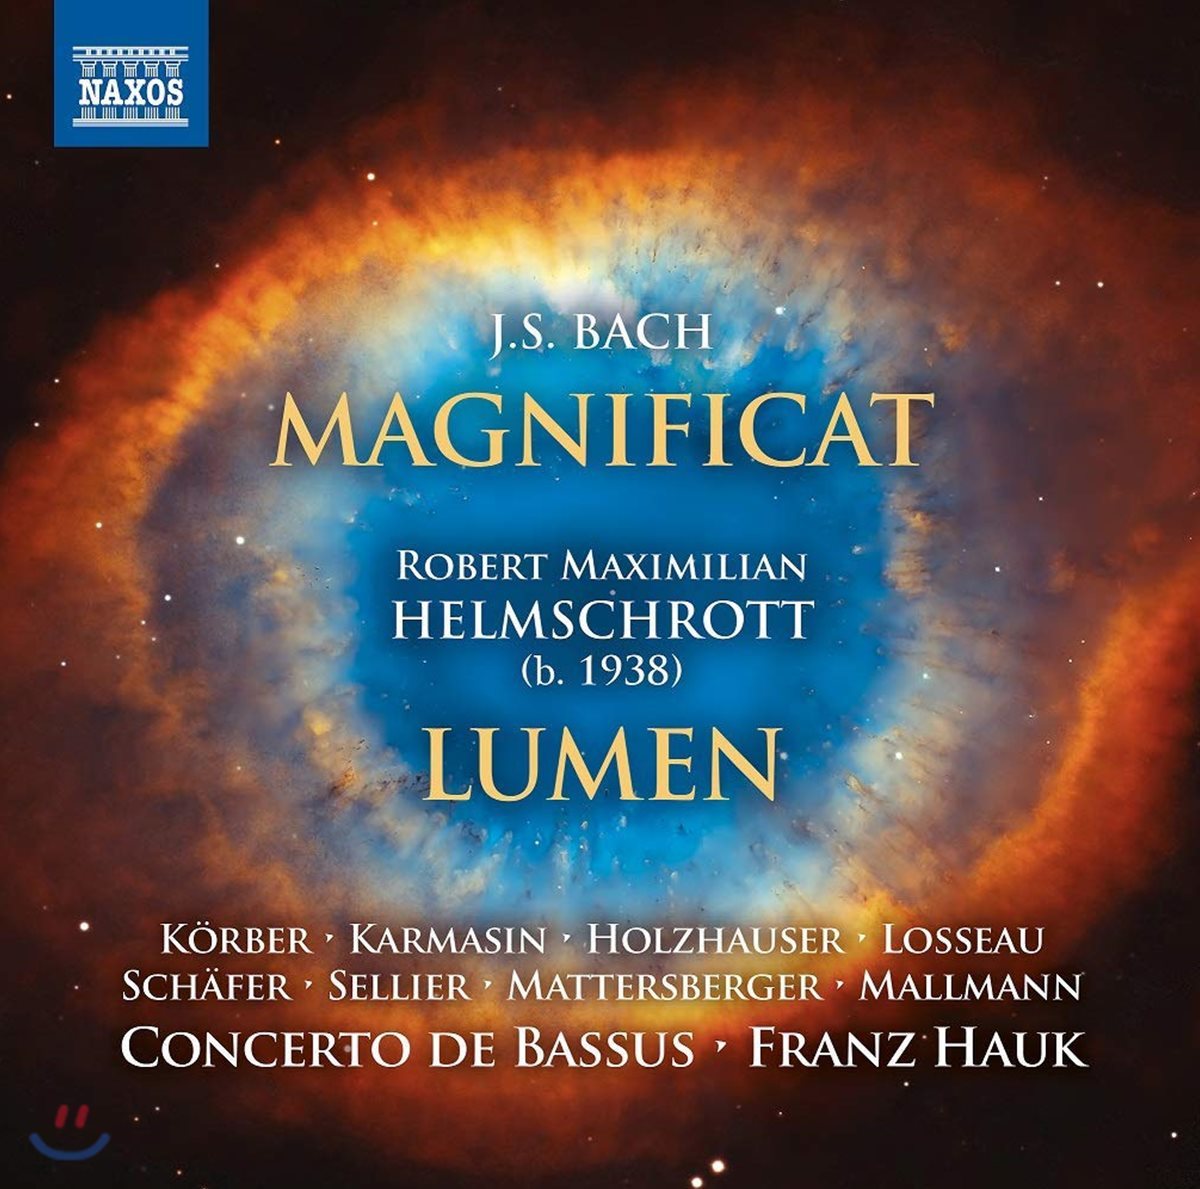 Franz Hauk 바흐: 마니피카트 / 로베르트 헬름슈로트: 루멘 (Bach: Magnificat / Robert Helmschrott: Lumen)